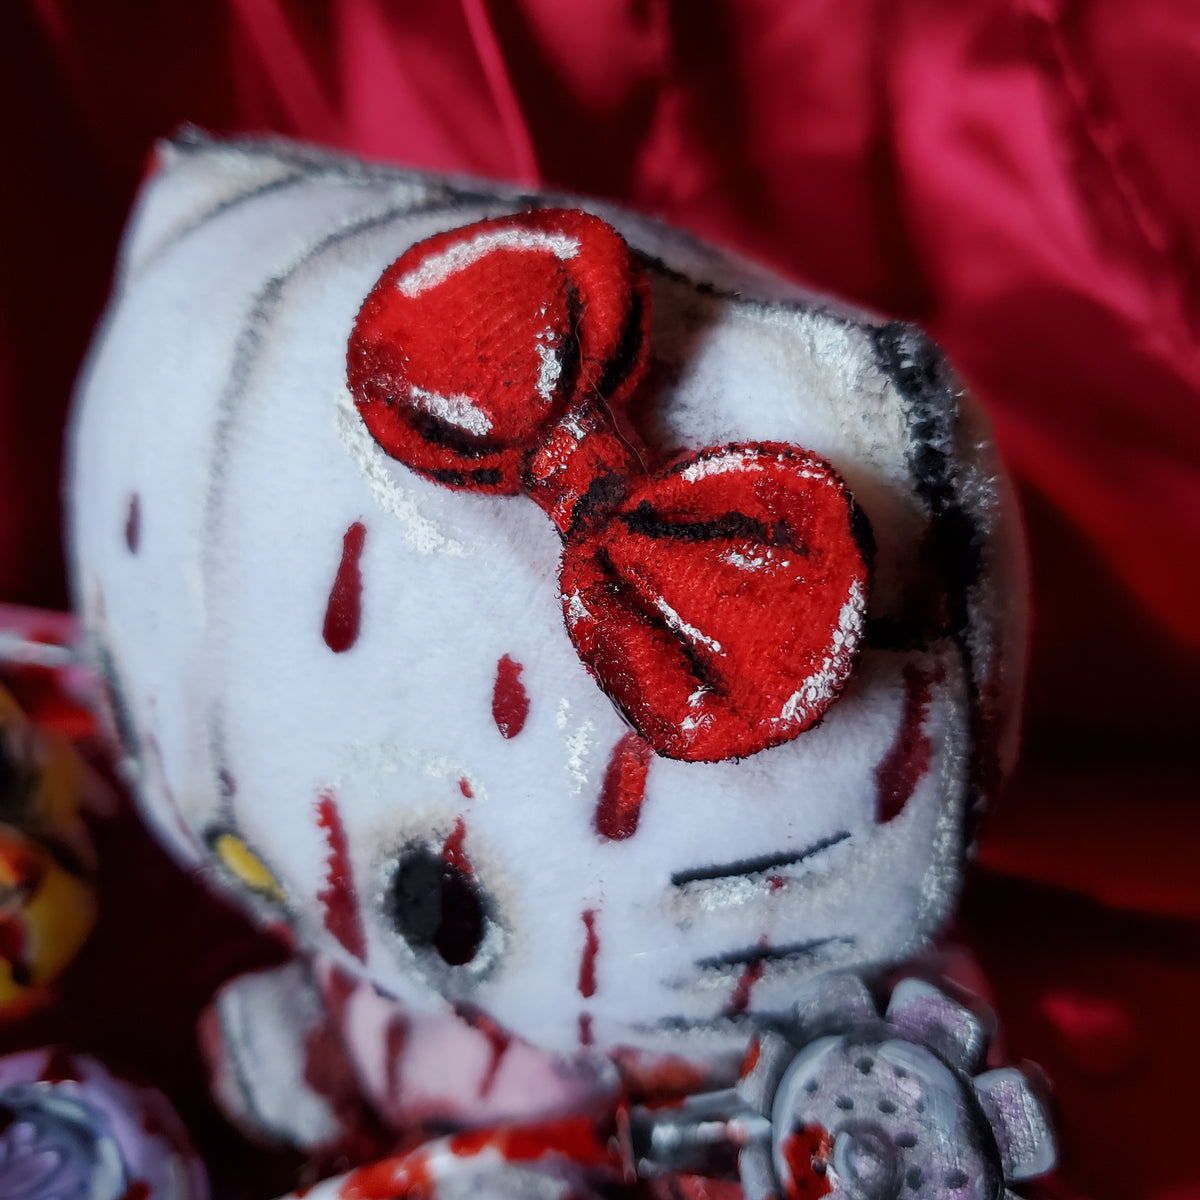 Creepy Horror Hello Kitty Doll Plush